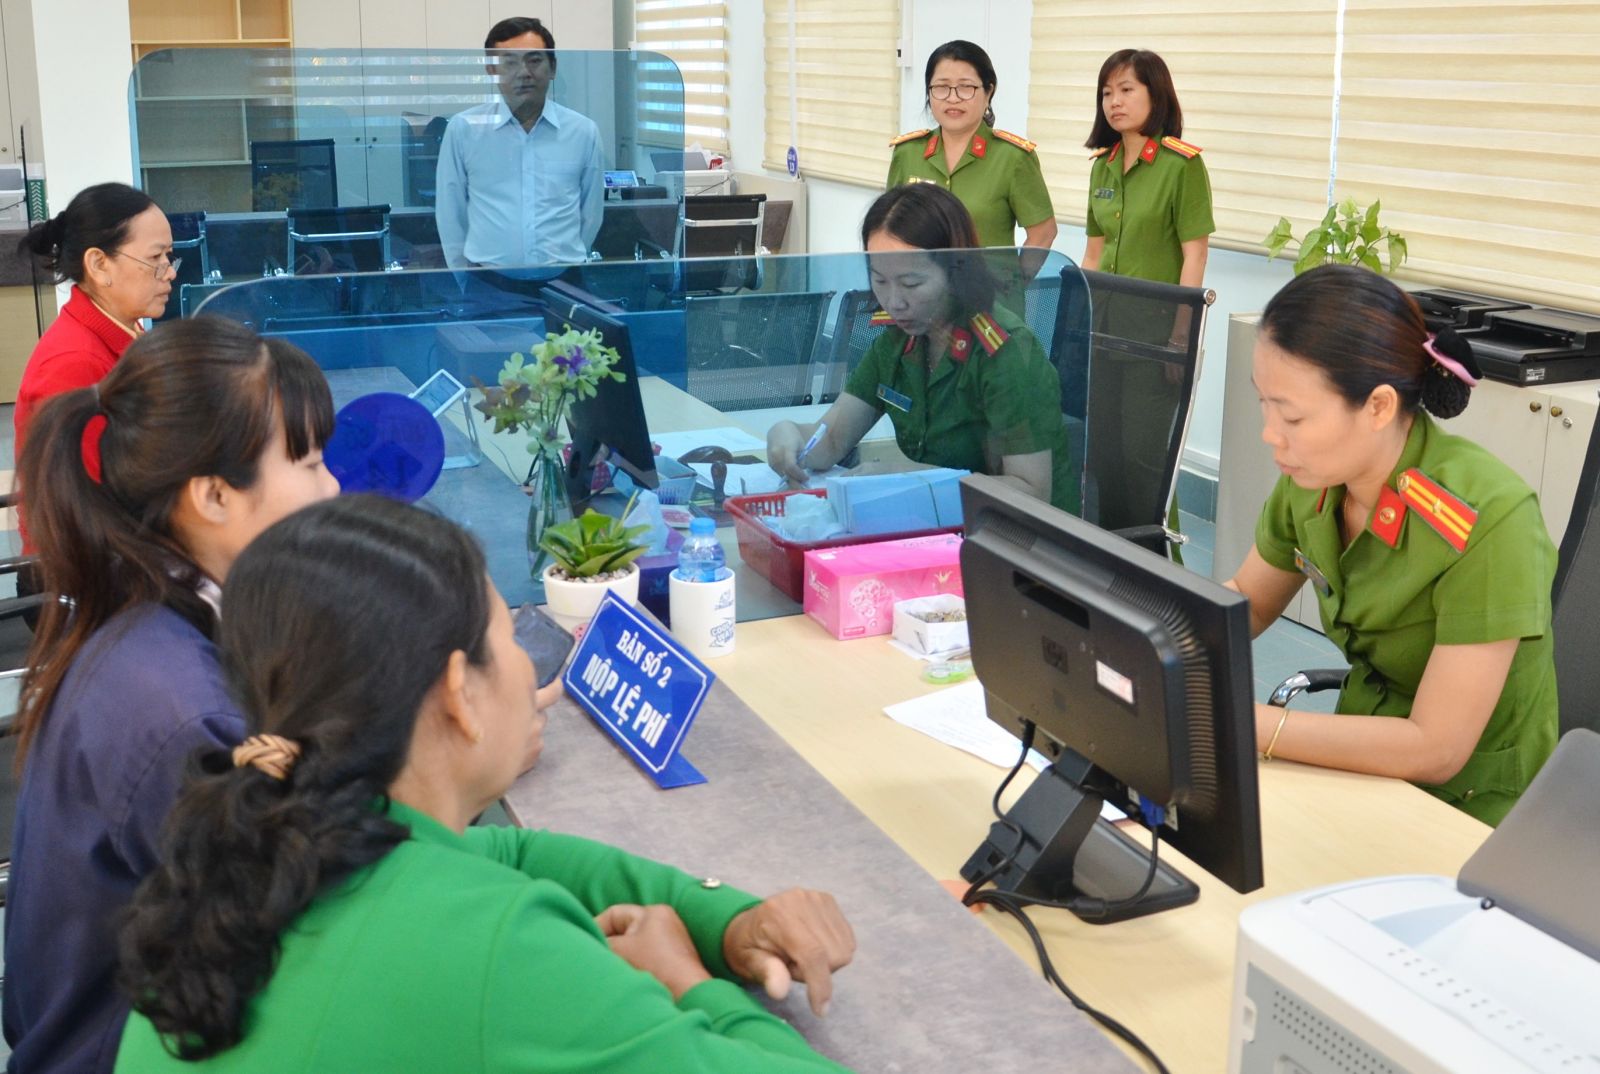 Điểm báo in Tây Ninh ngày 02.11.2018